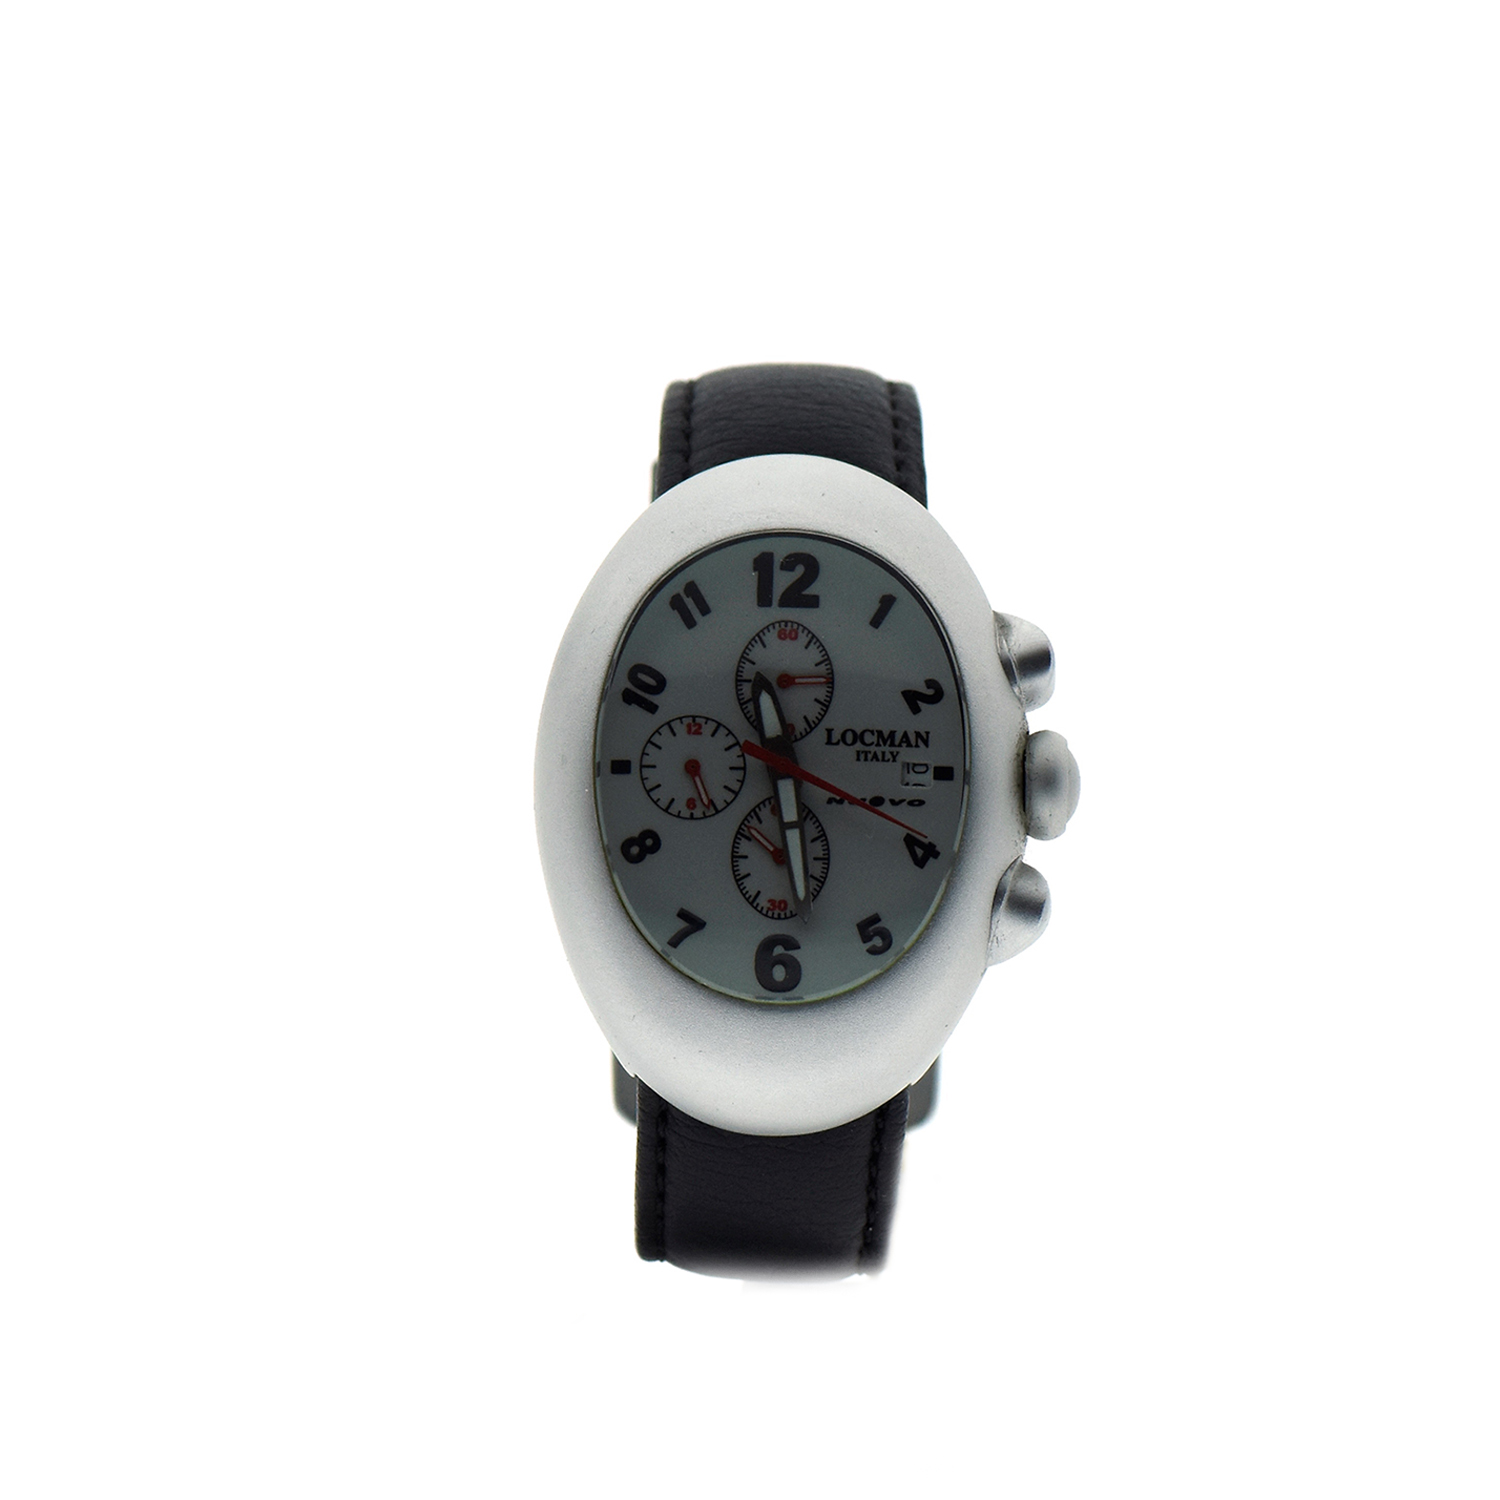 Orologio Locman modello Nuovo cronografo cassa alluminio